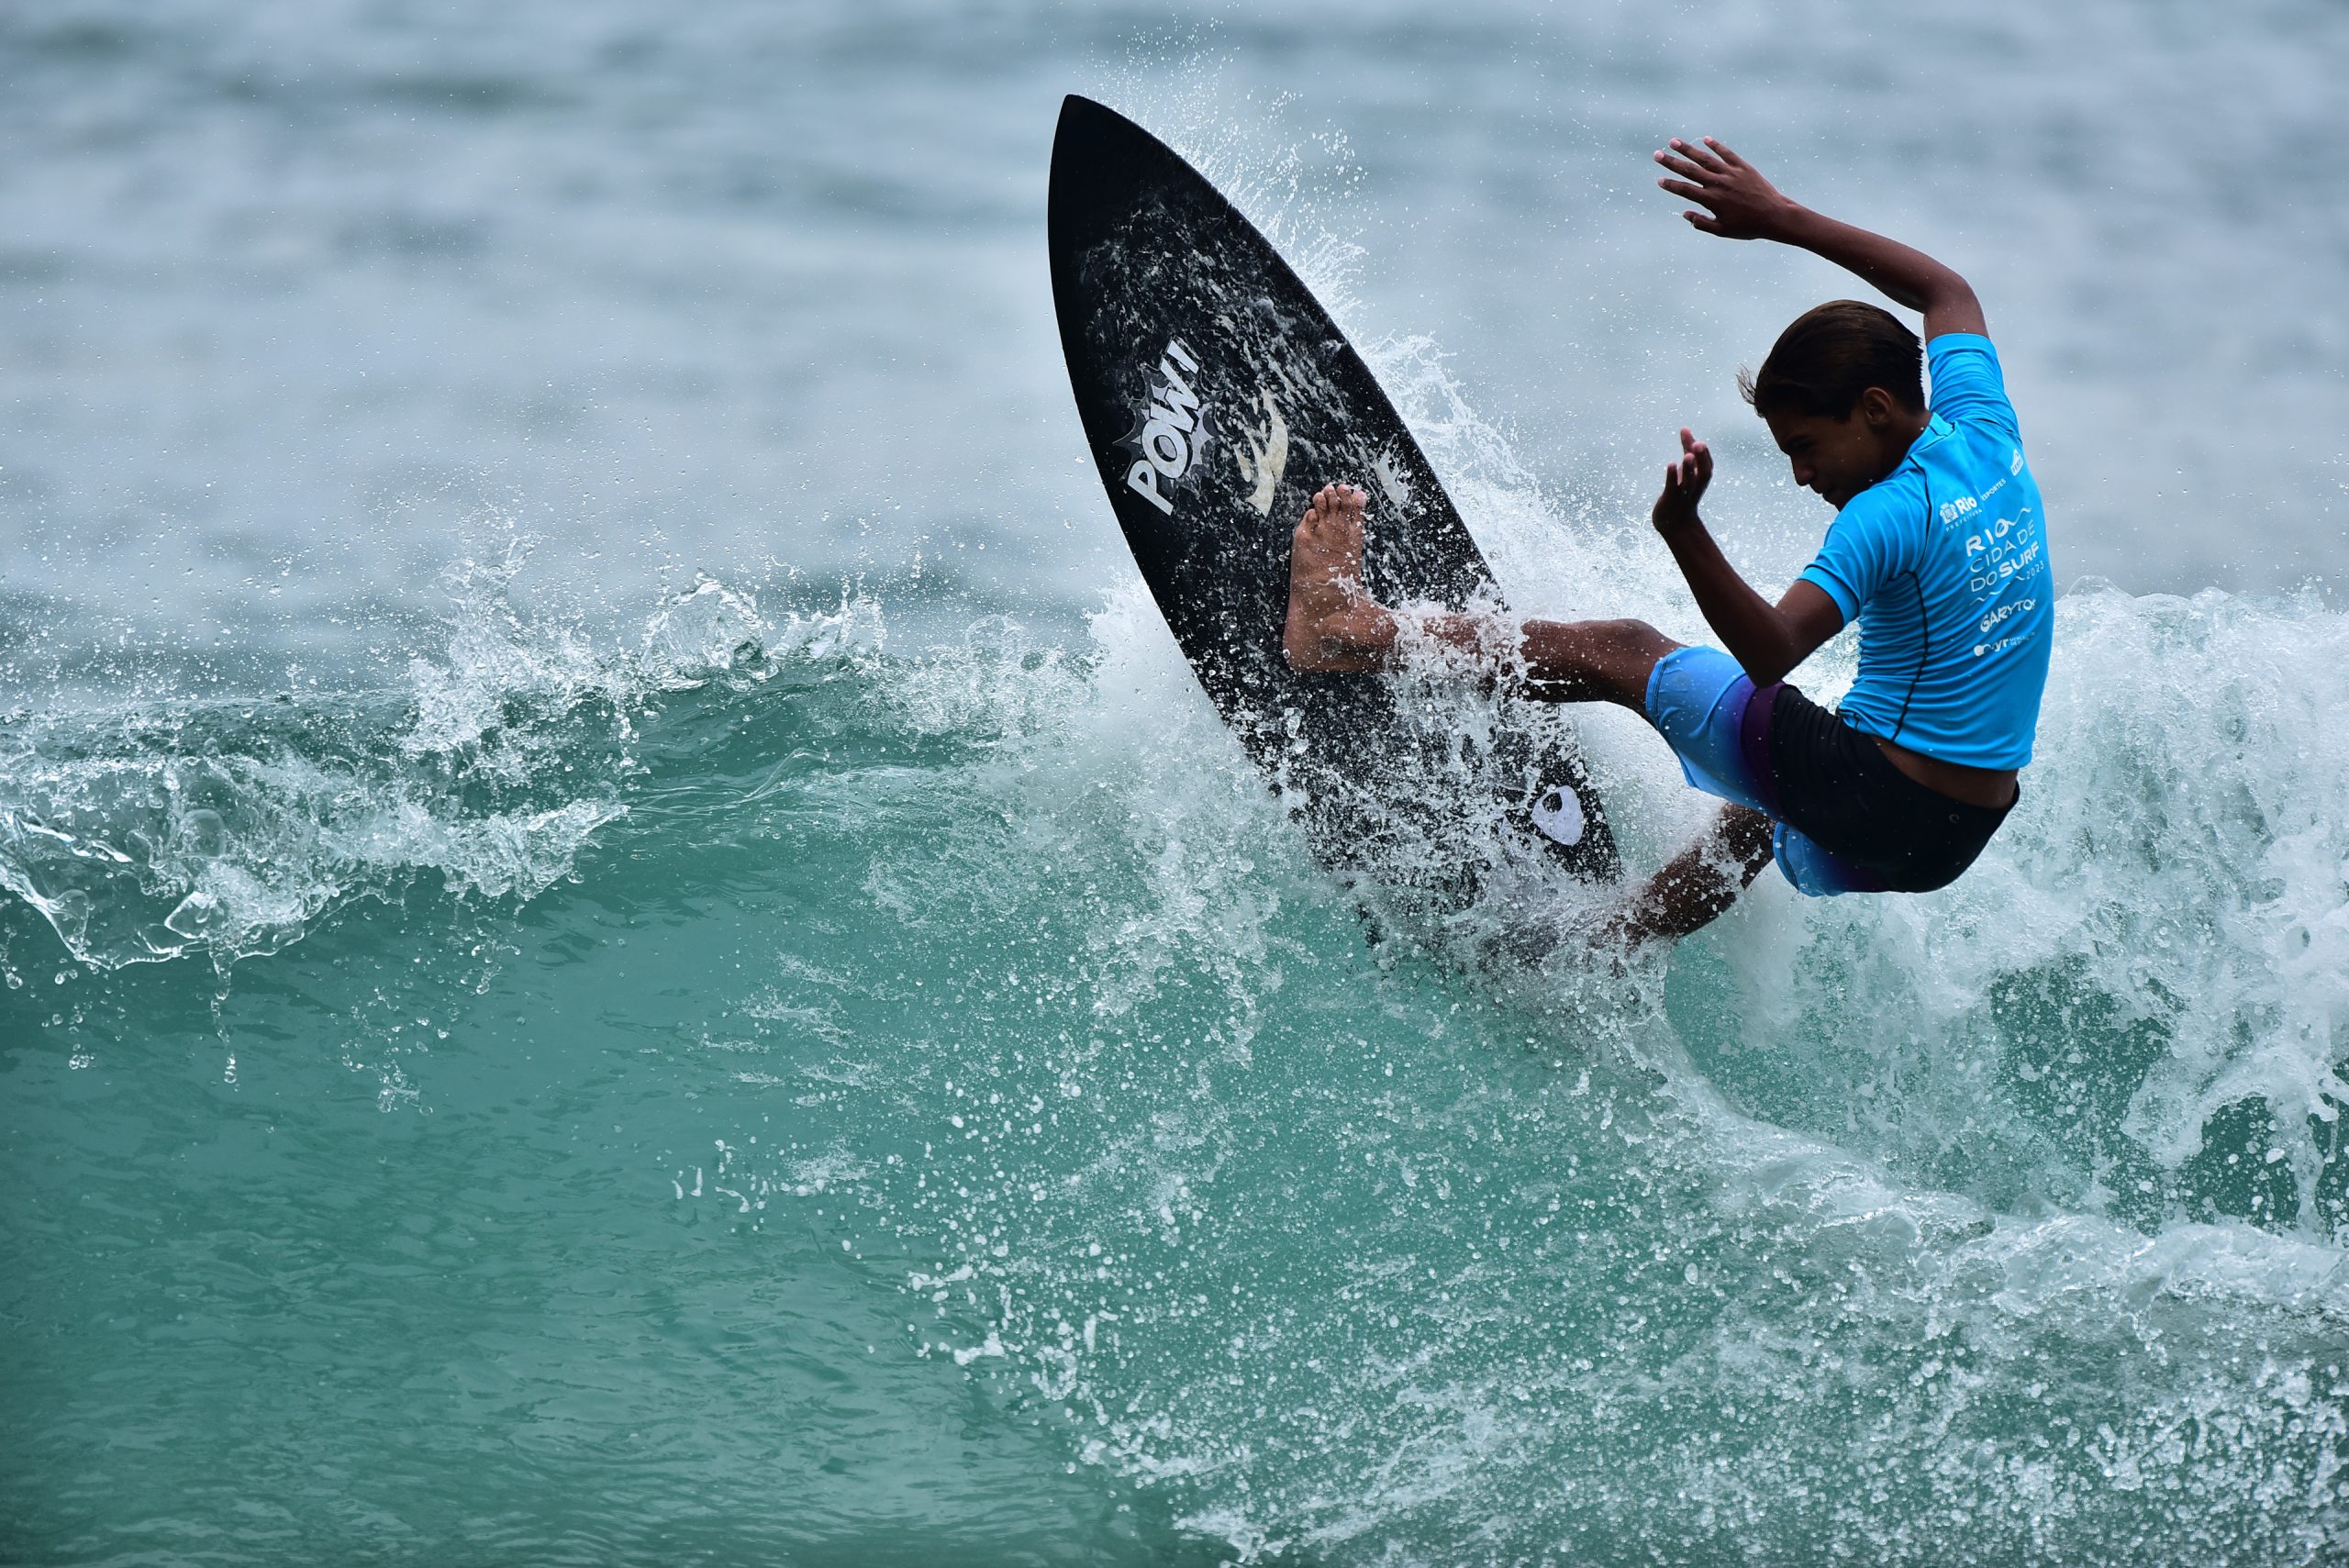 Phellype Silva - Rio Cidade do Surf, etapa da Prainha. Foto: Nelson Veiga.